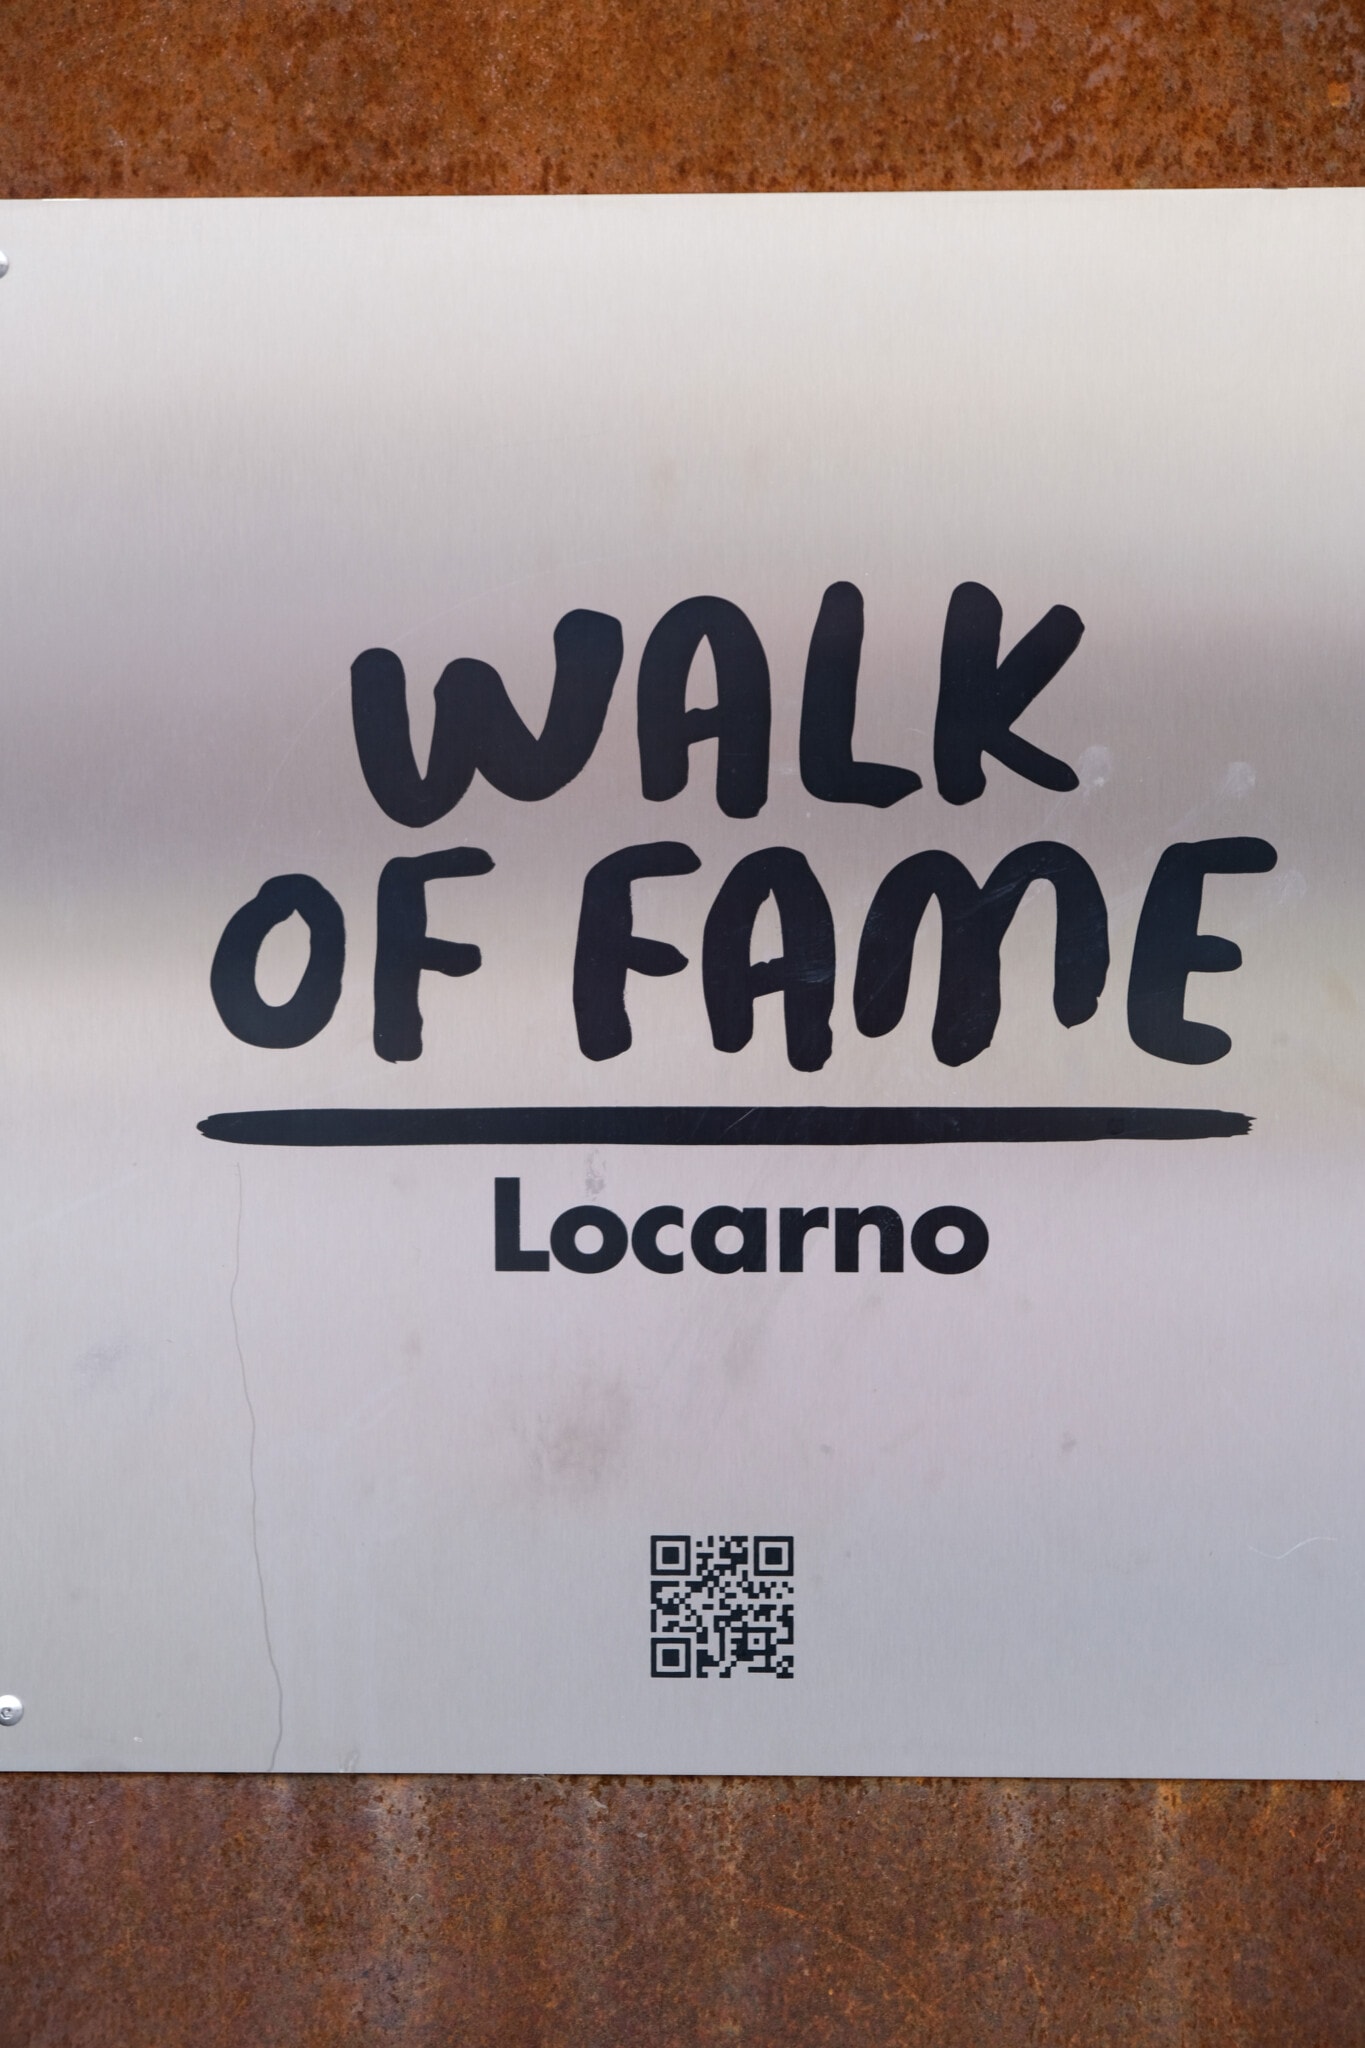 Schild auf welchem Walk Of Fame Locarno steht